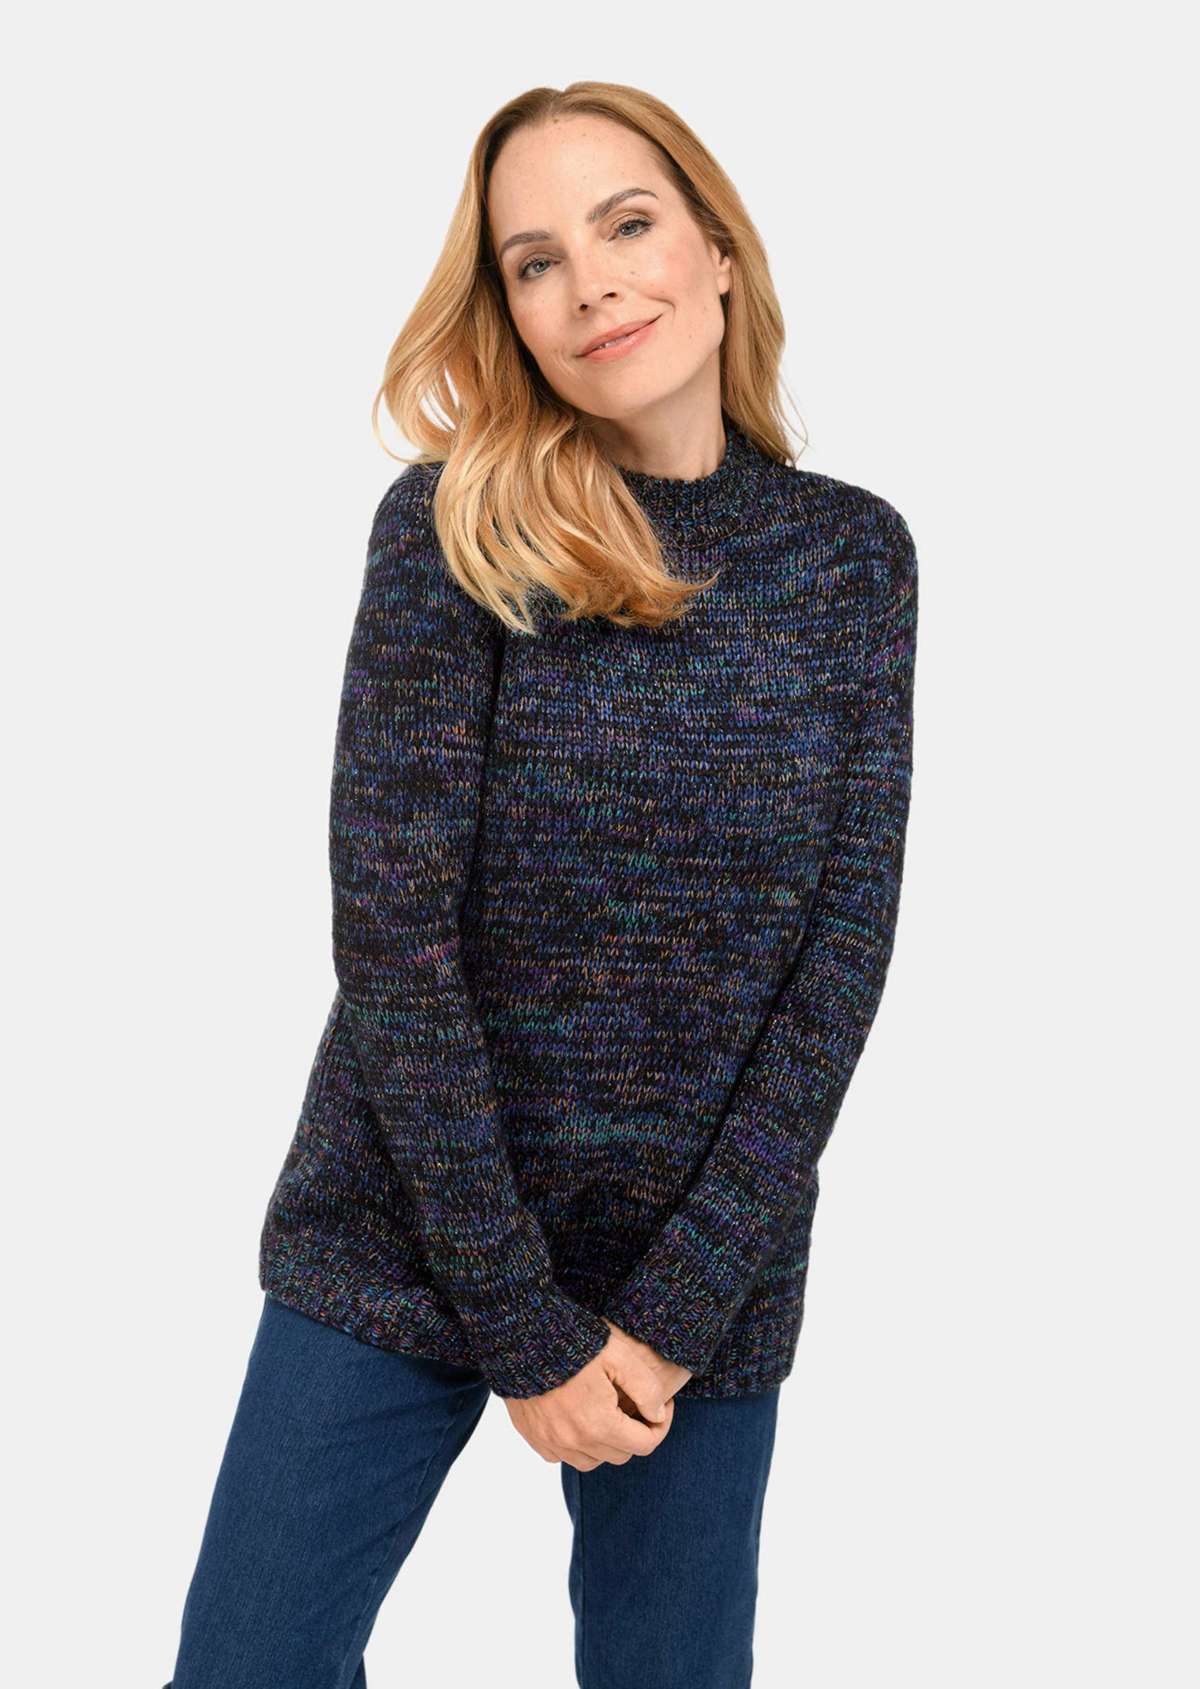 Удобный разноцветный свитер.